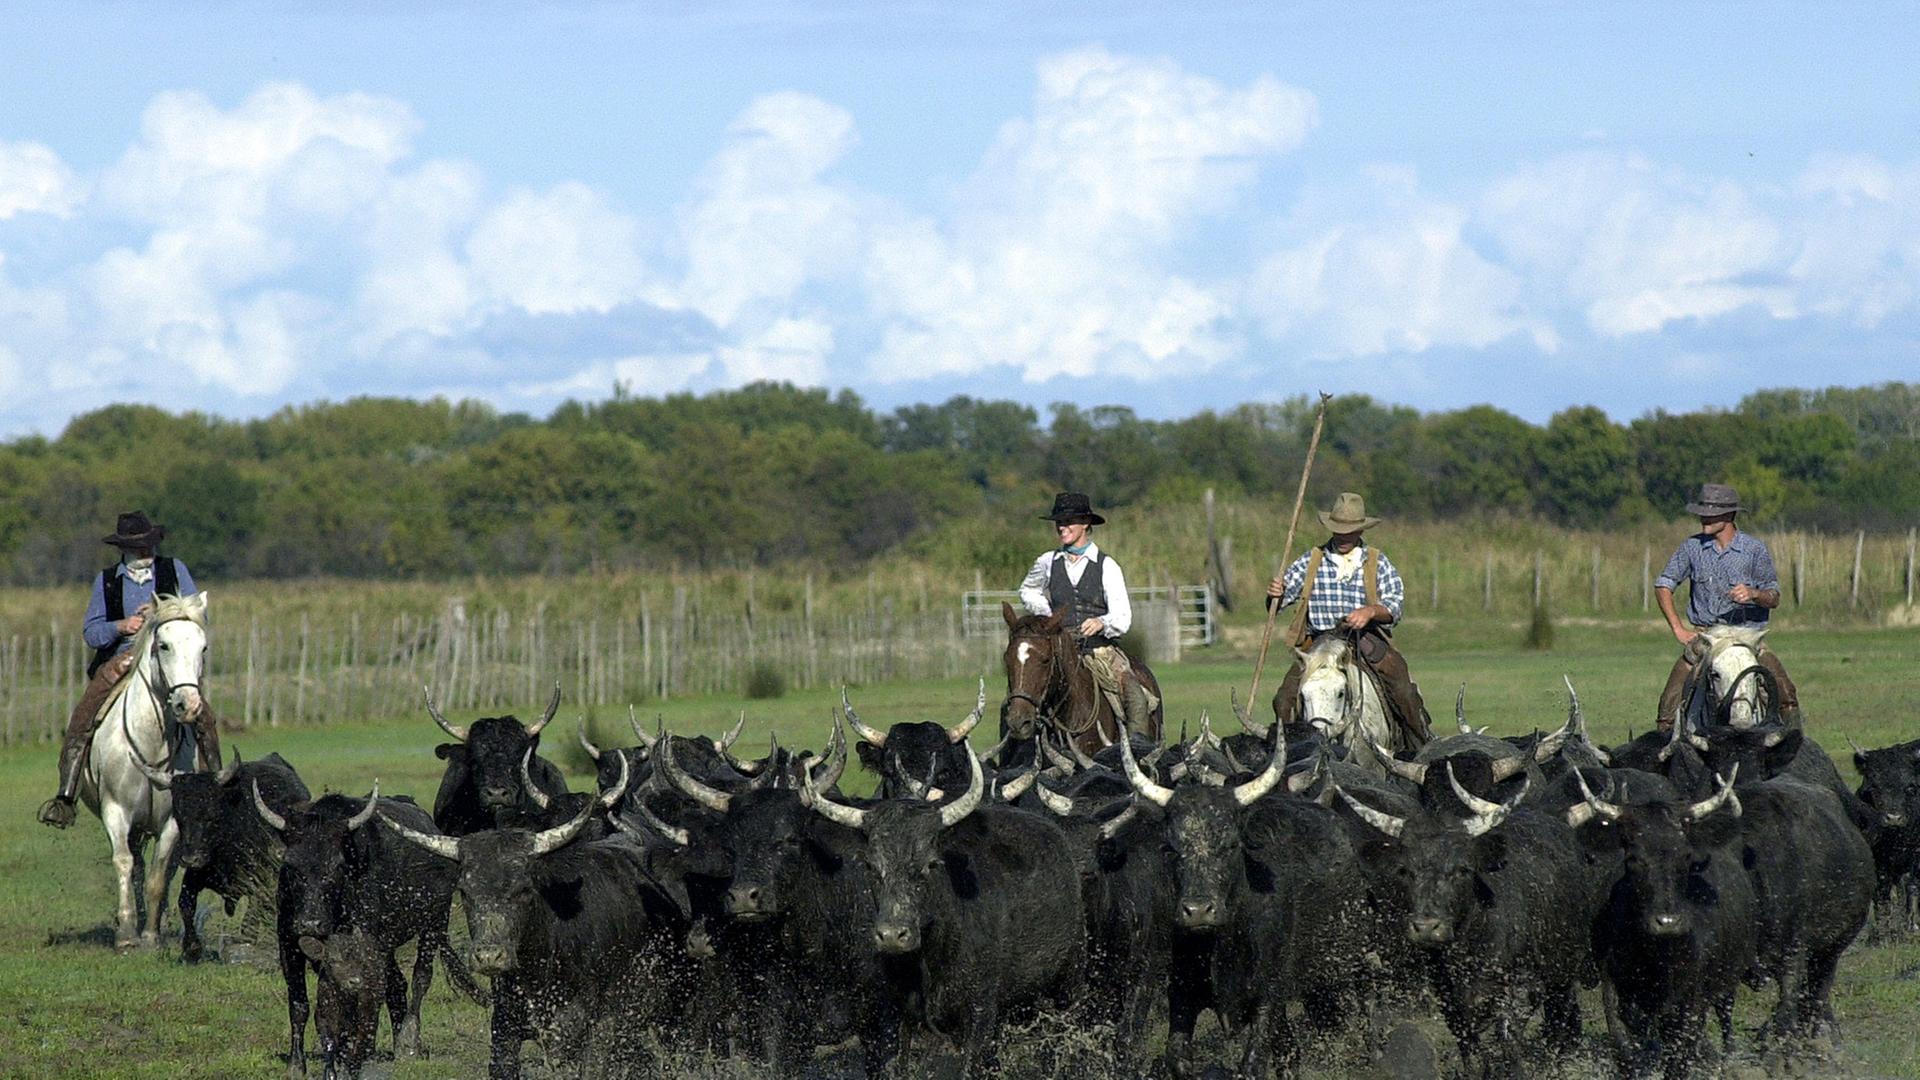 "Cowboys" treiben in der französischen Region Camargue schwarze Stiere vor sich her